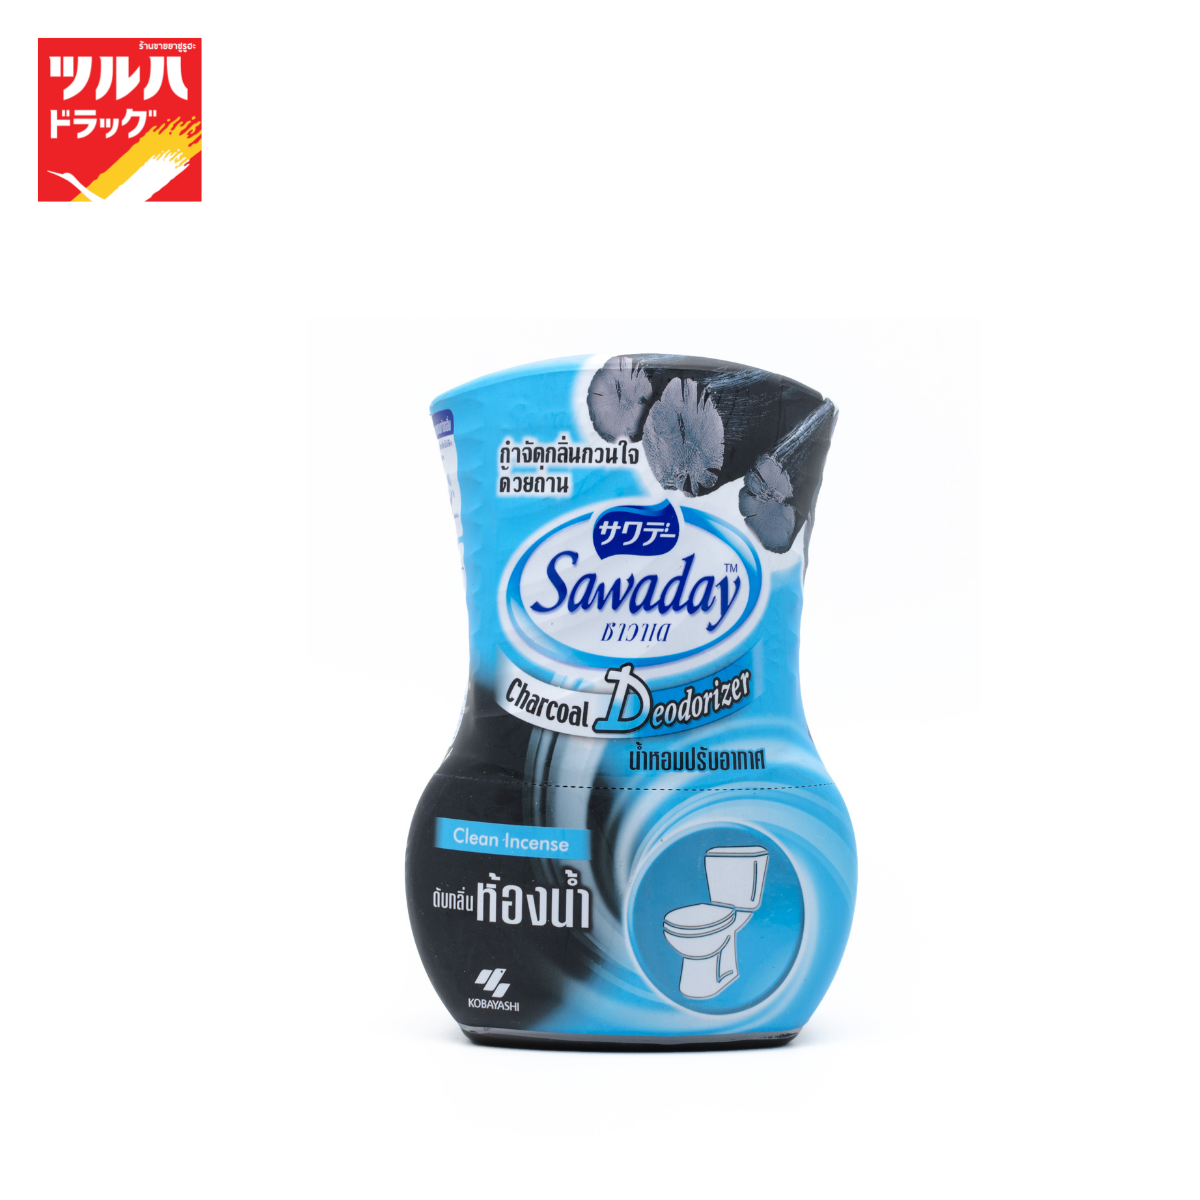 Sawade Air Freshener For Toilette 350 ml. / ซาวาเด น้ำหอม สำหรับดับกลิ่นห้องน้ำ 350 มล.